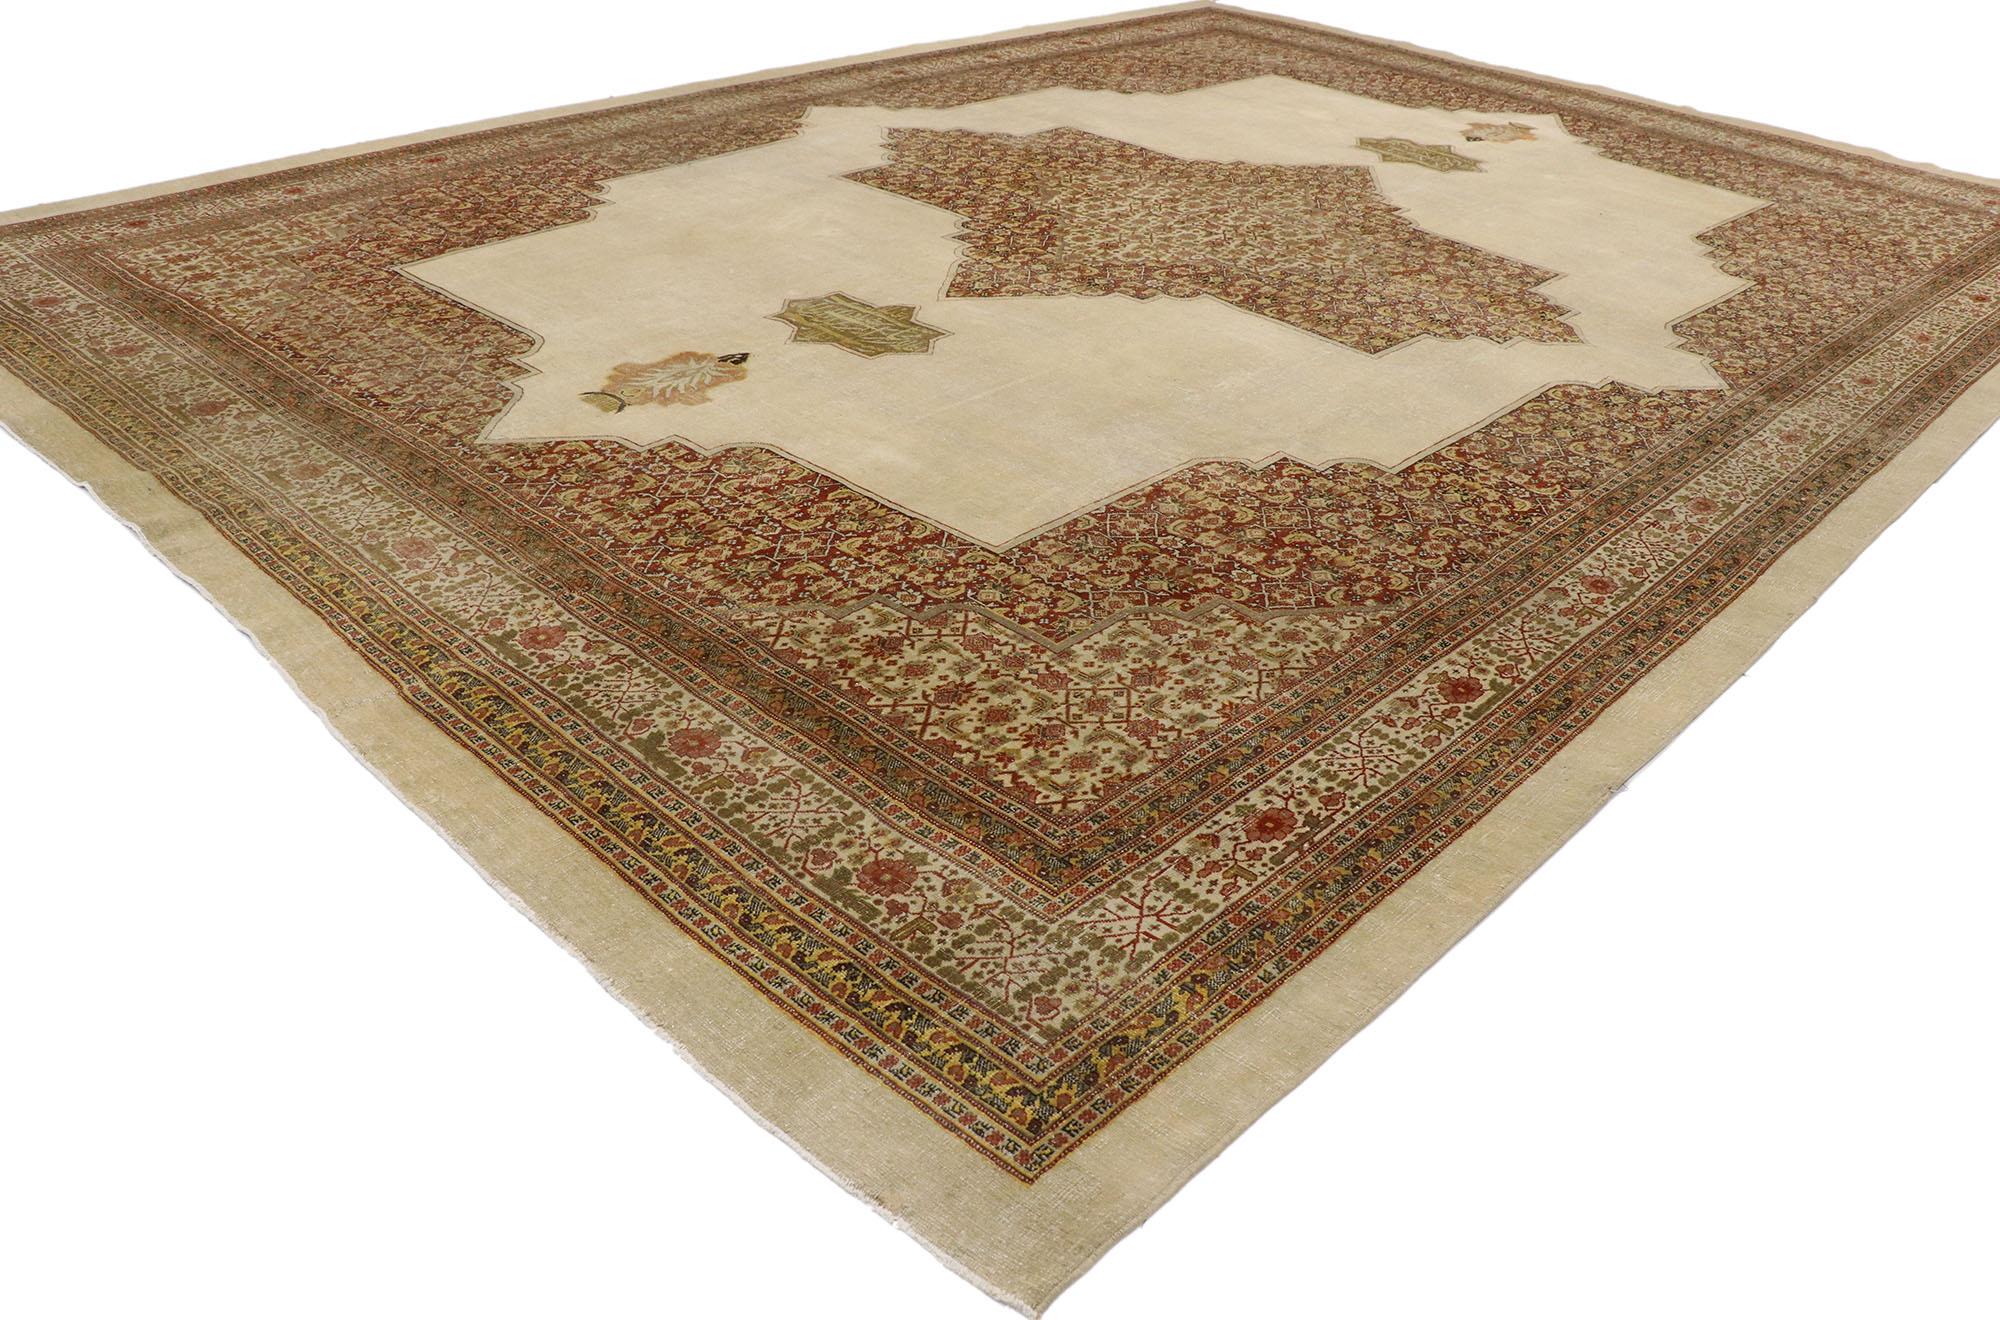 53250 Antiker persischer Täbris-Teppich im modernen, rustikalen Handwerksstil. Dieser antike persische Täbriz-Teppich aus handgeknüpfter Wolle beeindruckt durch seine kunstvollen Details und seine liebevolle, zeitlose Gestaltung. Das abgewetzte